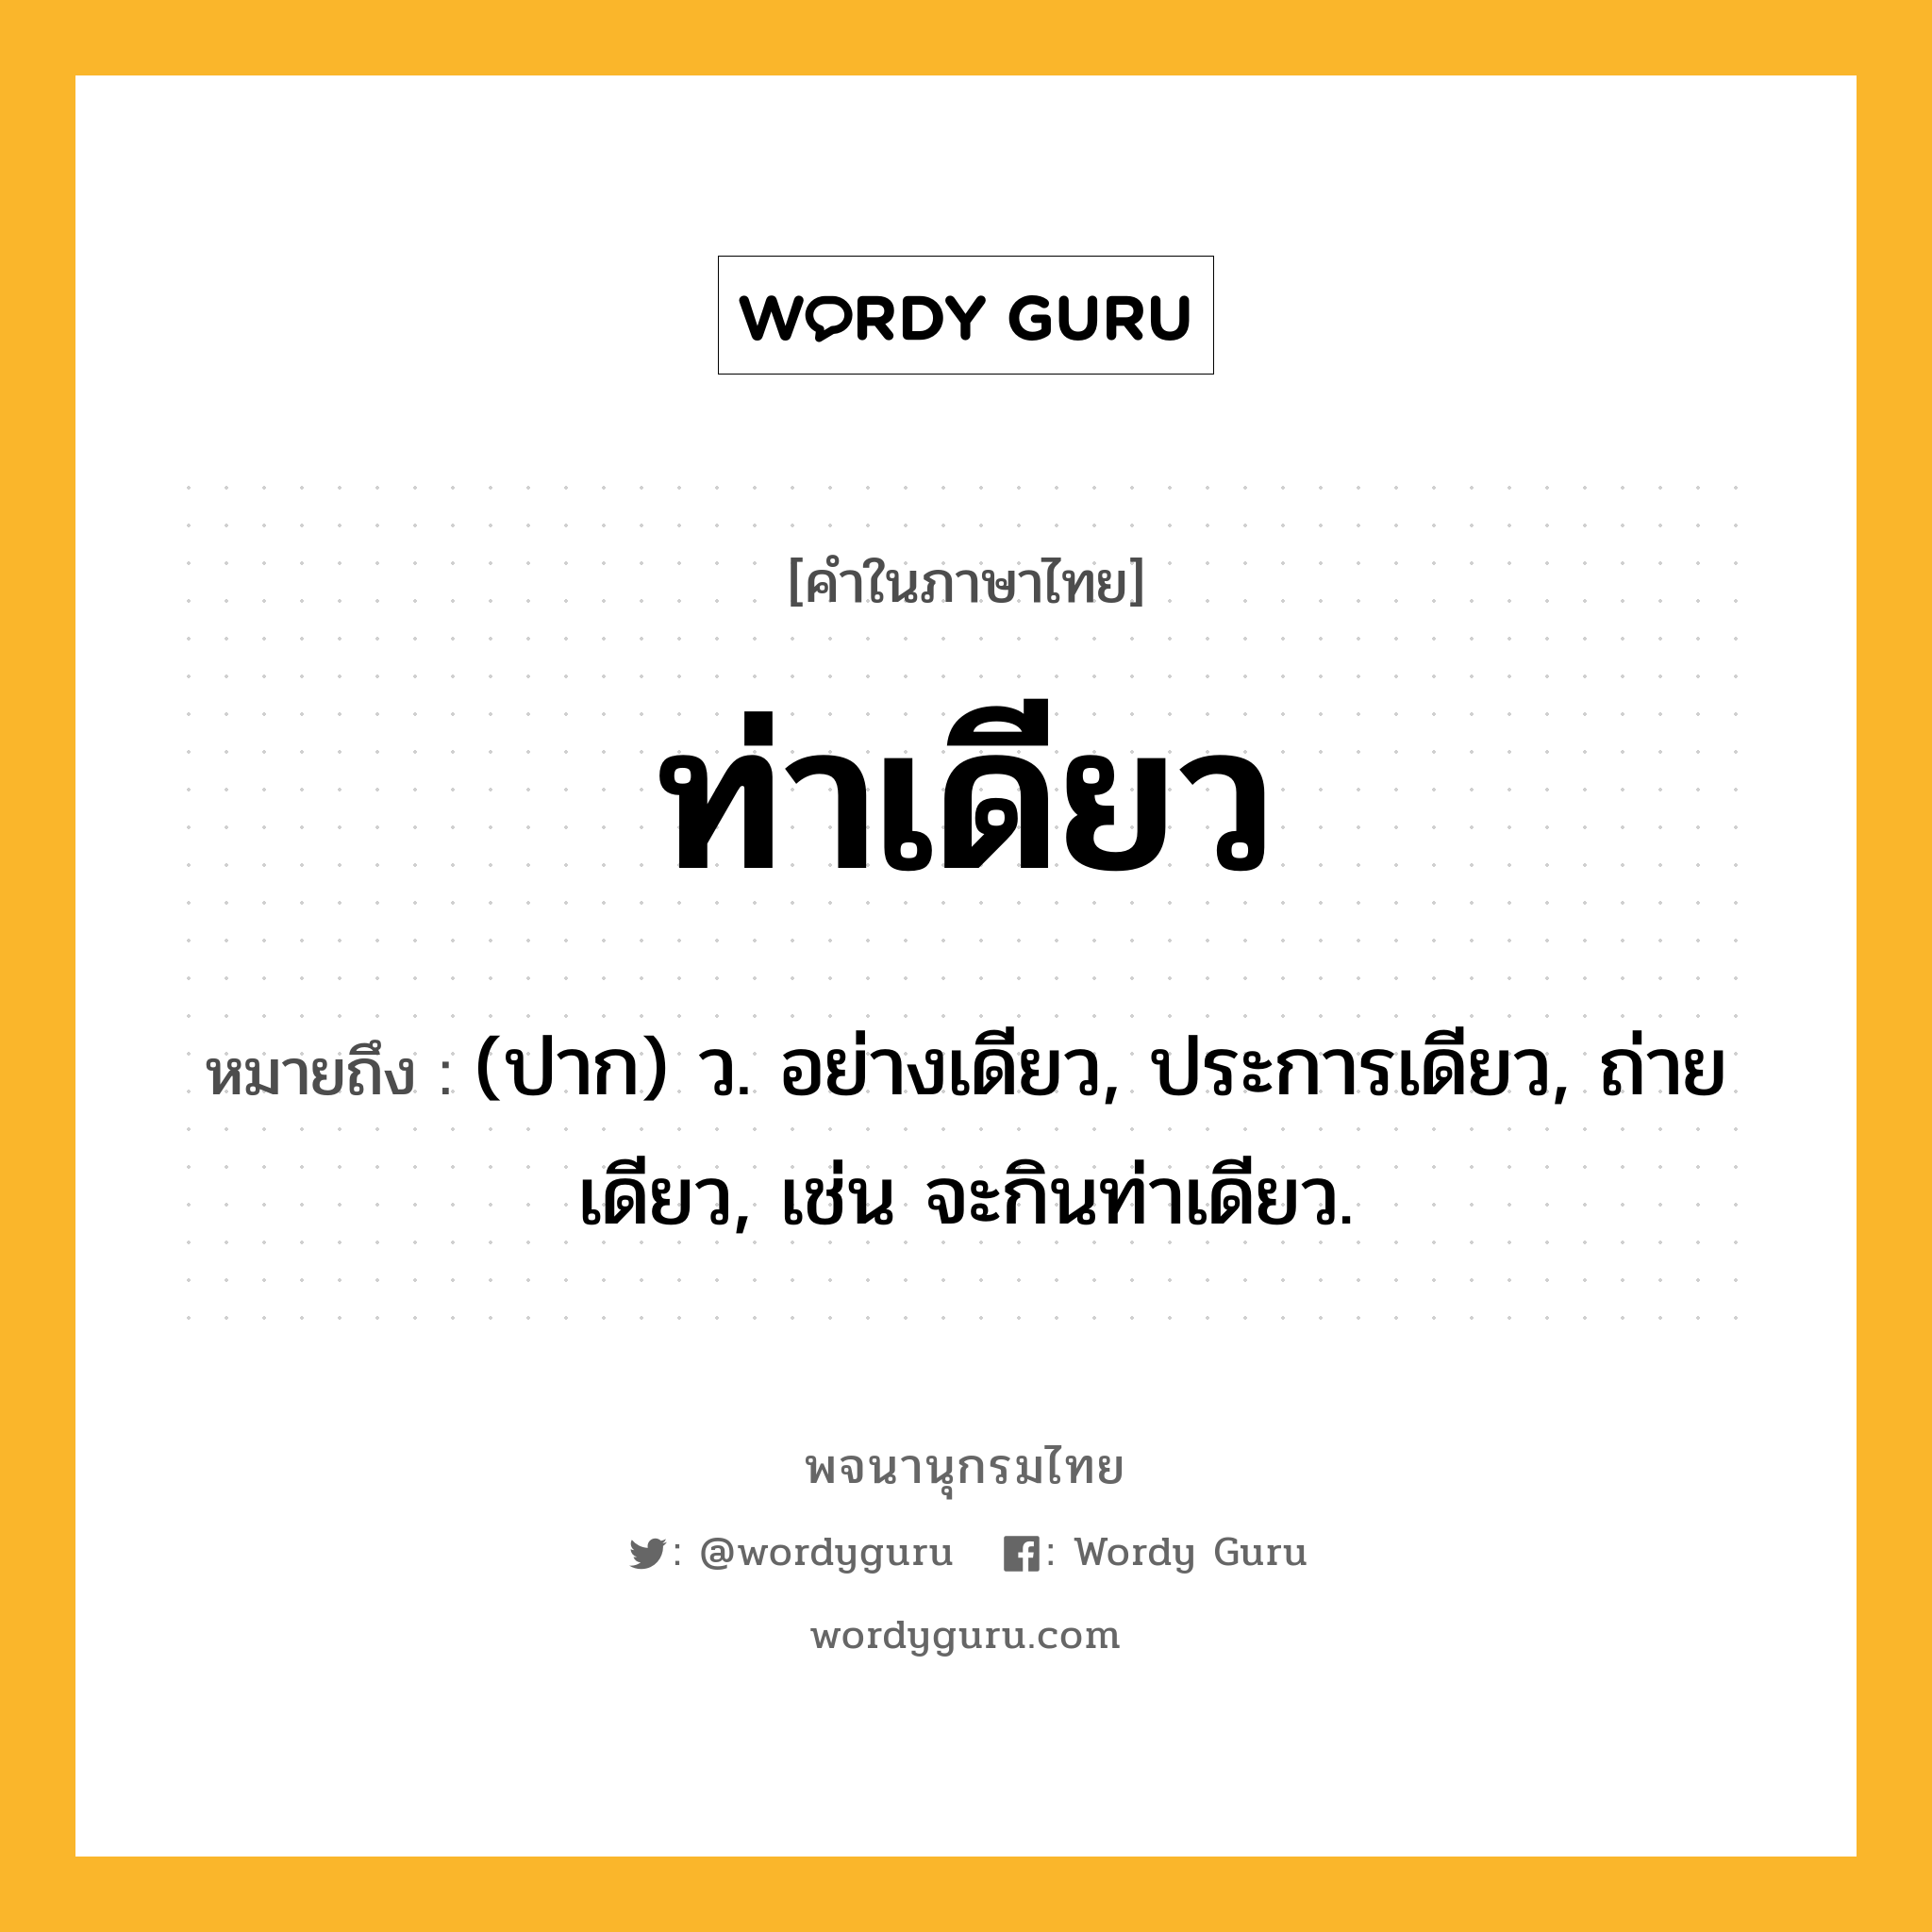 ท่าเดียว หมายถึงอะไร?, คำในภาษาไทย ท่าเดียว หมายถึง (ปาก) ว. อย่างเดียว, ประการเดียว, ถ่ายเดียว, เช่น จะกินท่าเดียว.